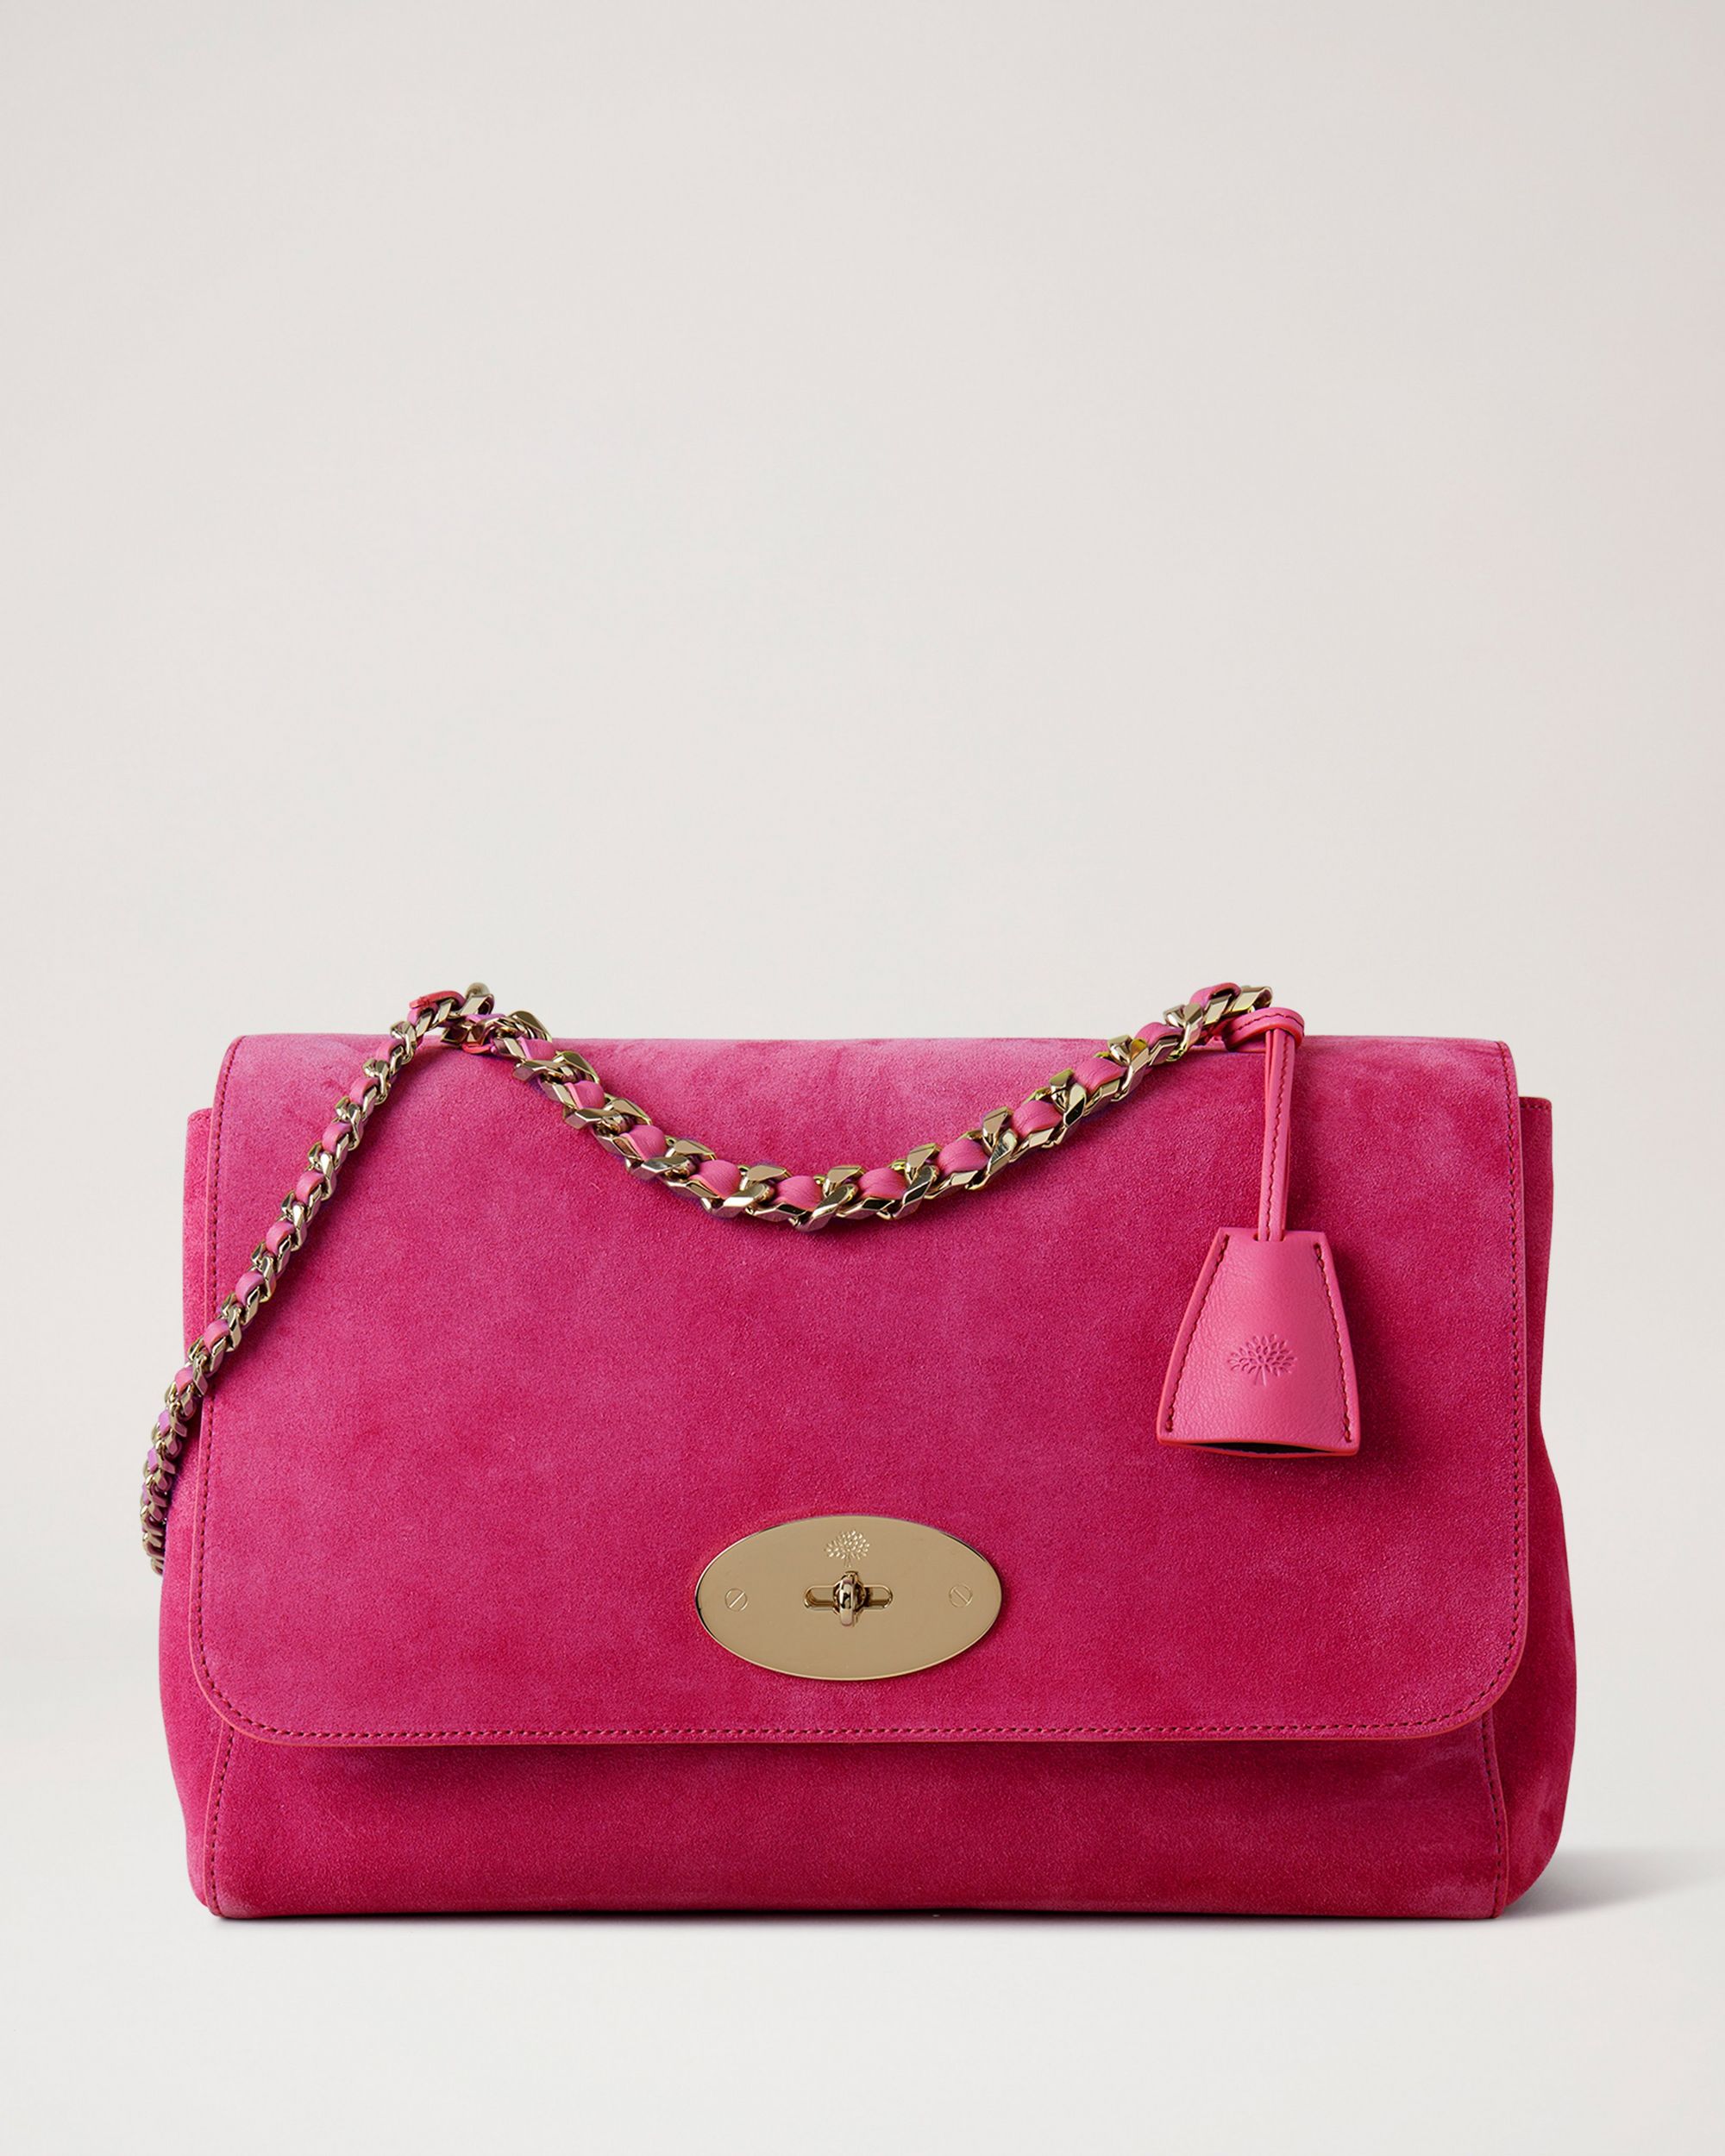 Pink velvet luxury handbag